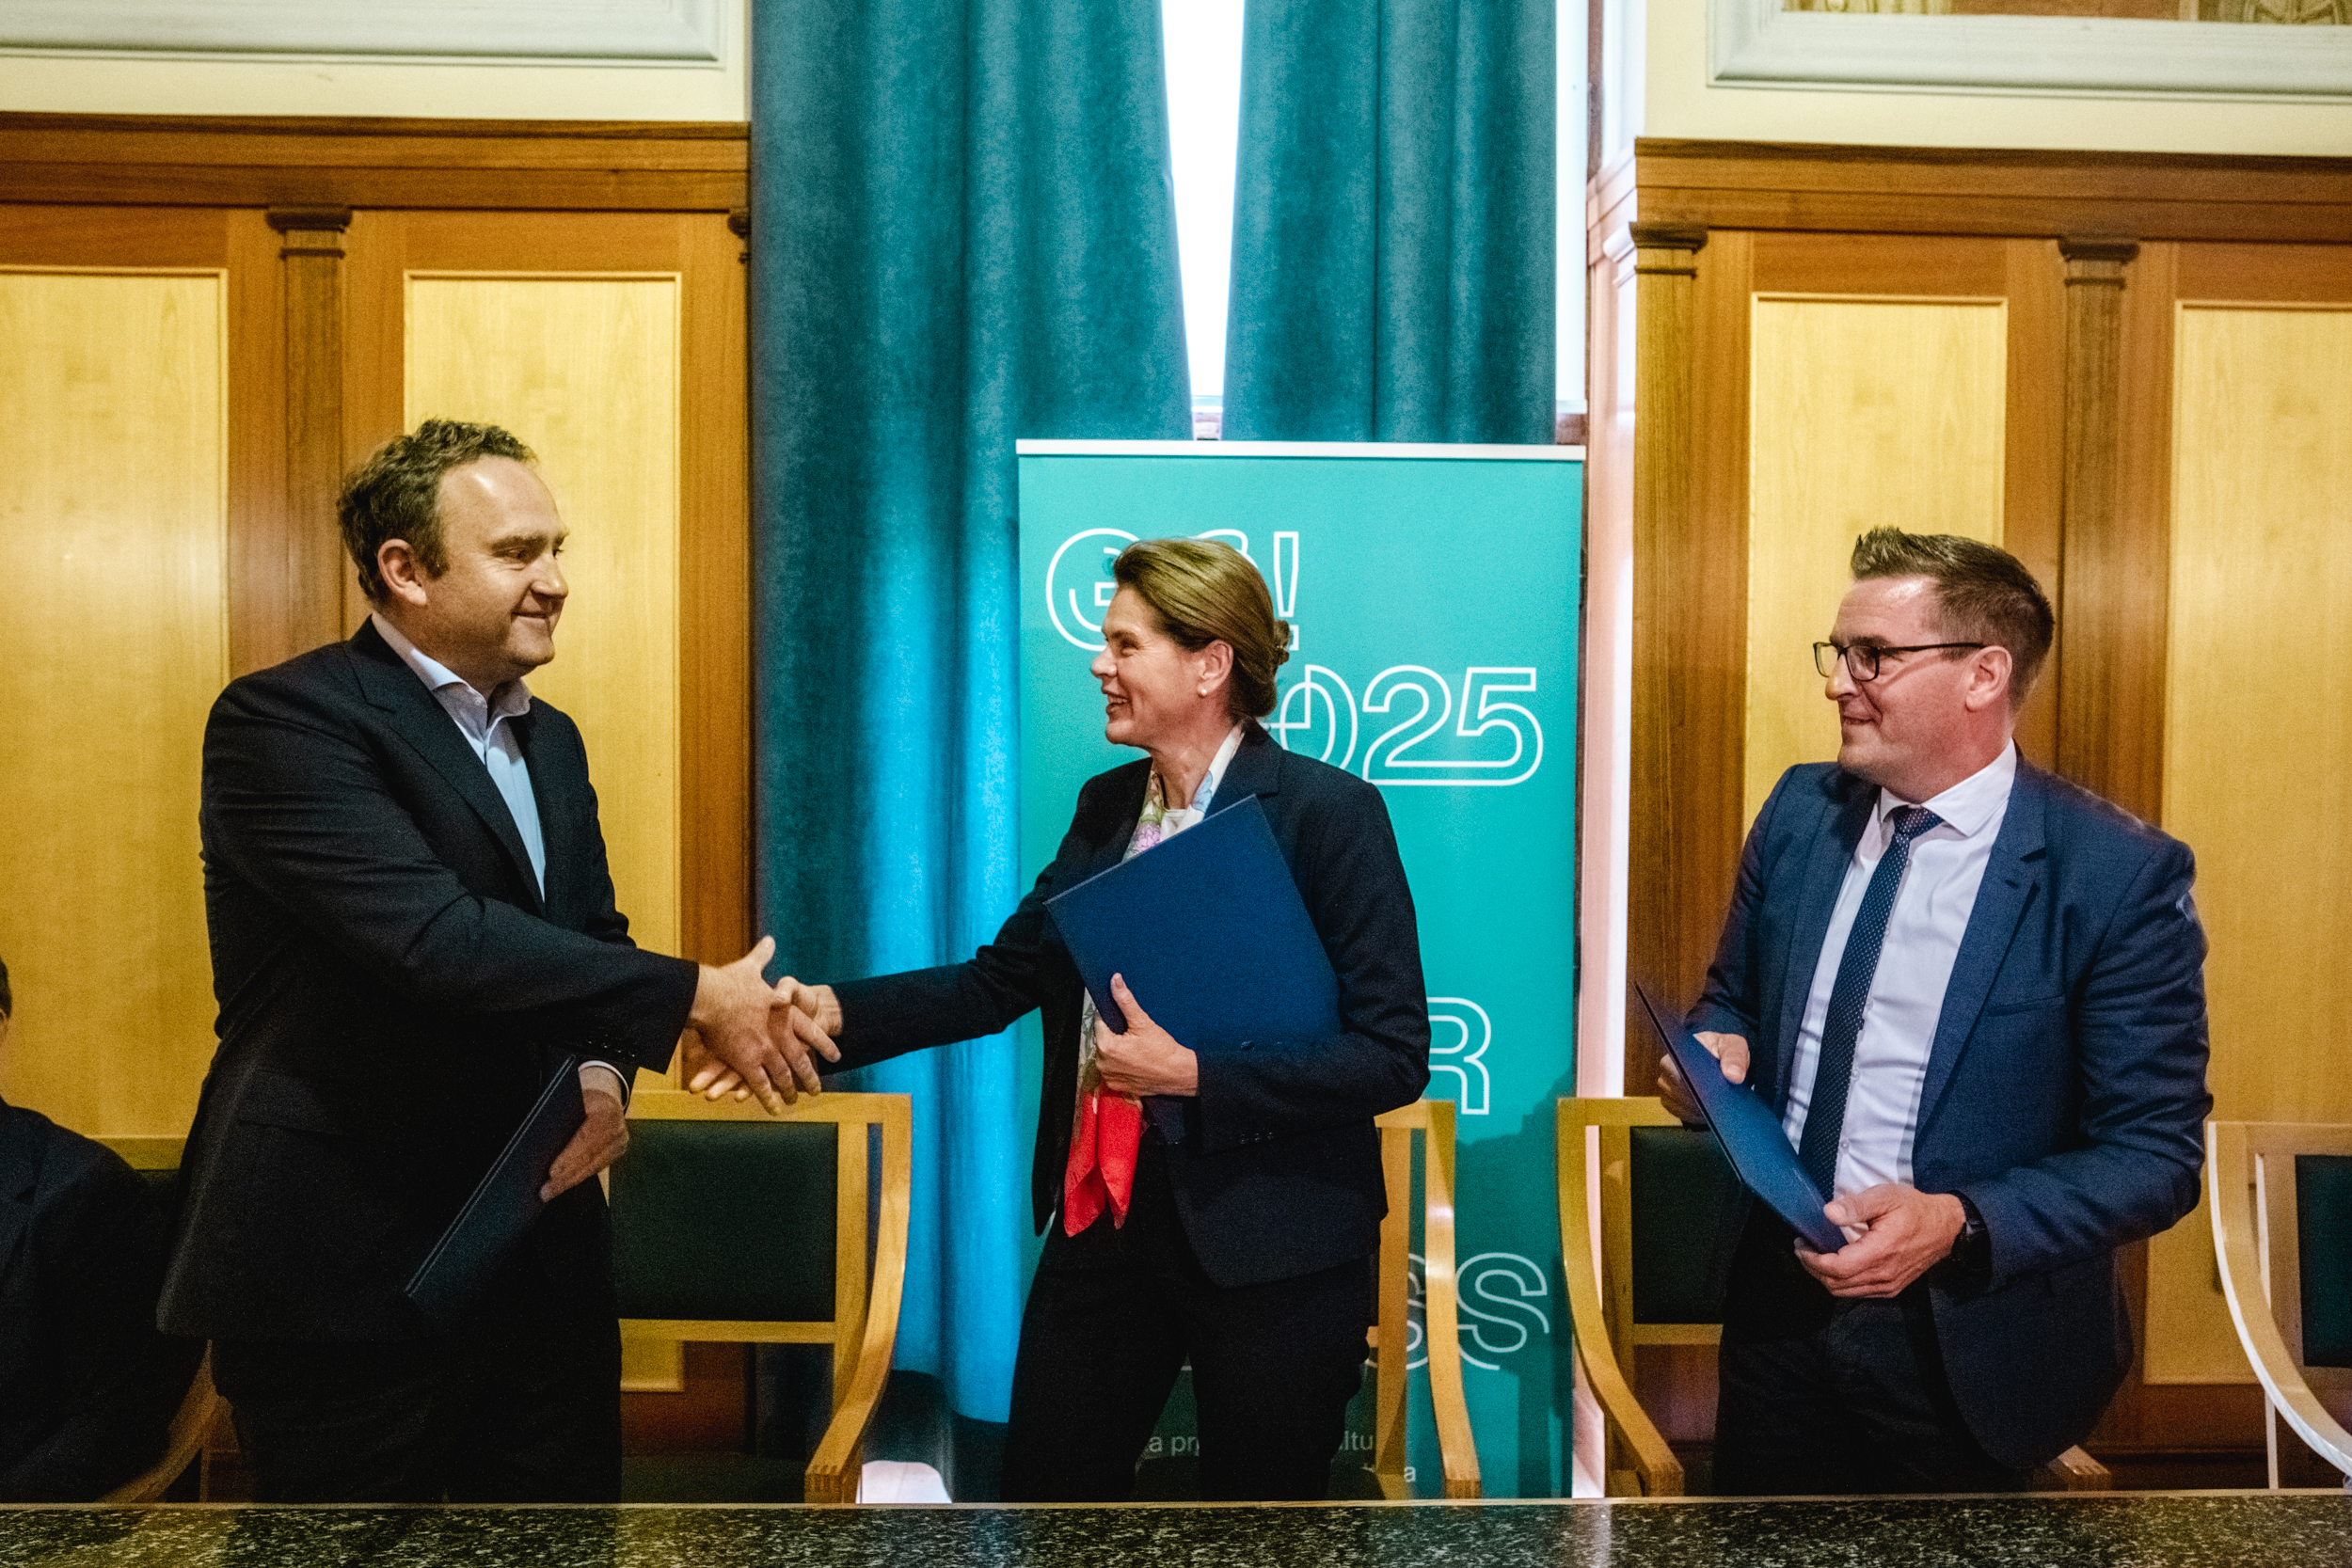 Ministrica za infrastrukturo se rokuje z direktorjem Slovenskih železnic, ob njiju s Sporazumom v roki stoji novogoriški županji